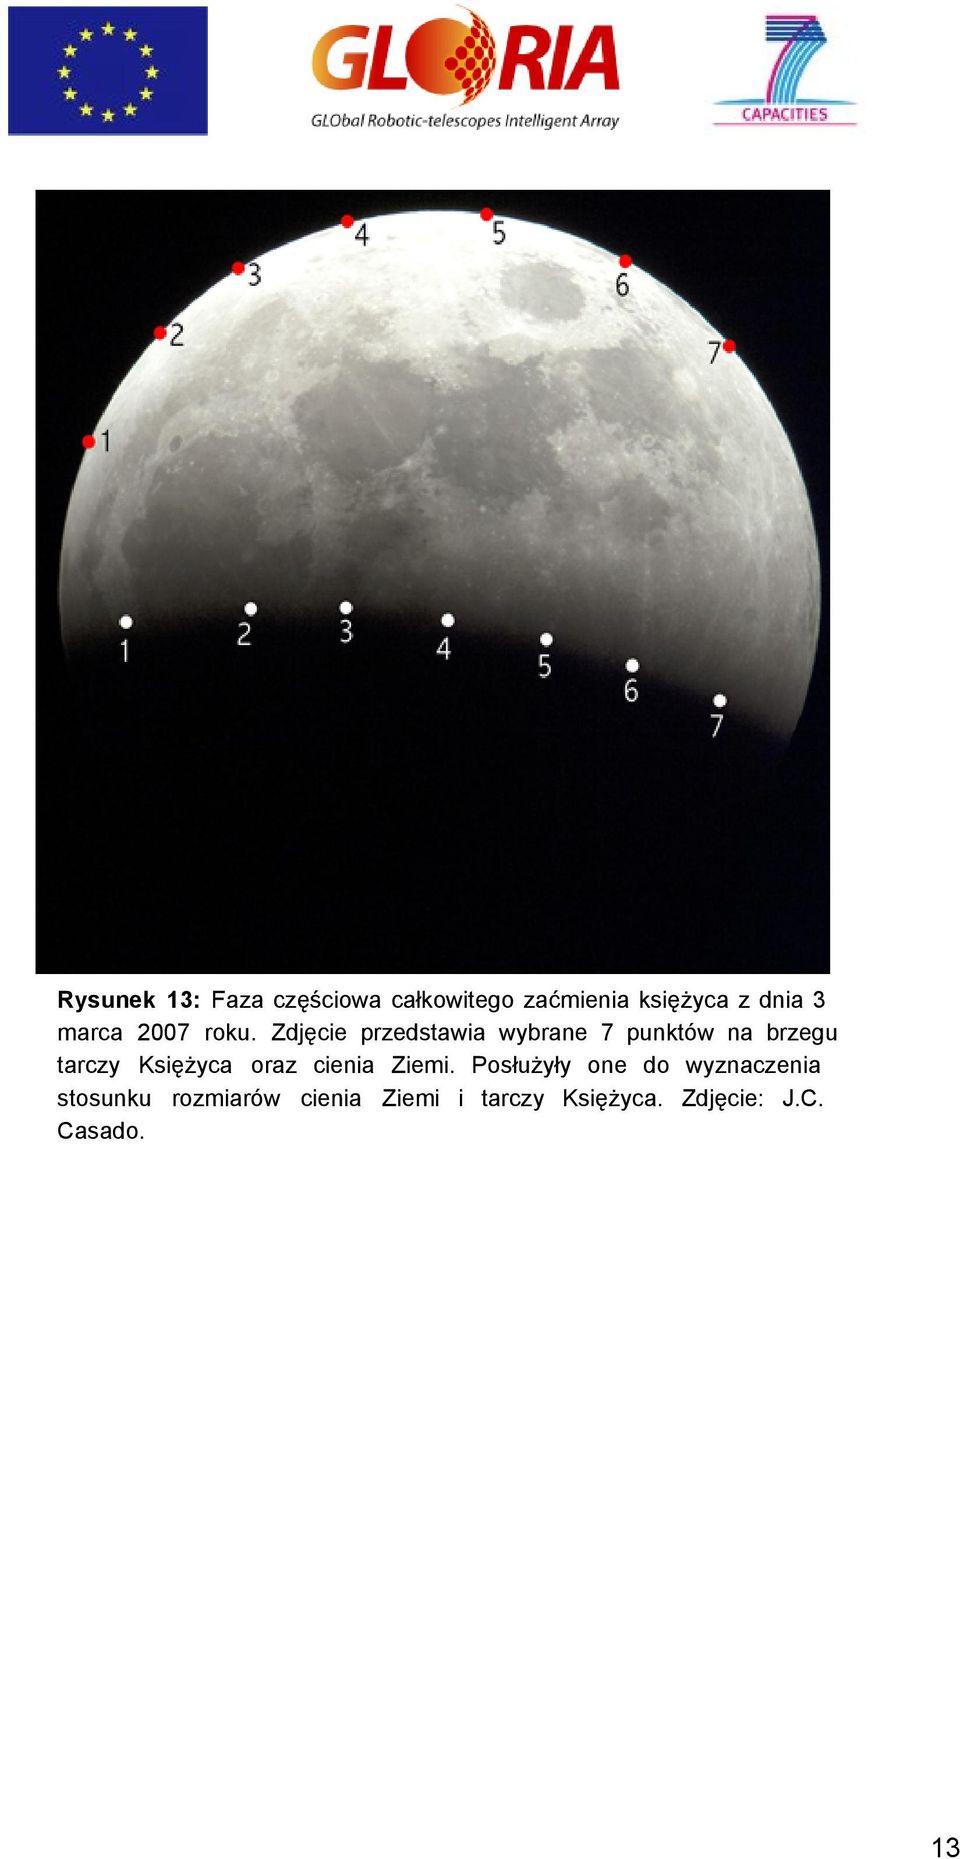 Zdjęcie przedstawia wybrane 7 punktów na brzegu tarczy Księżyca